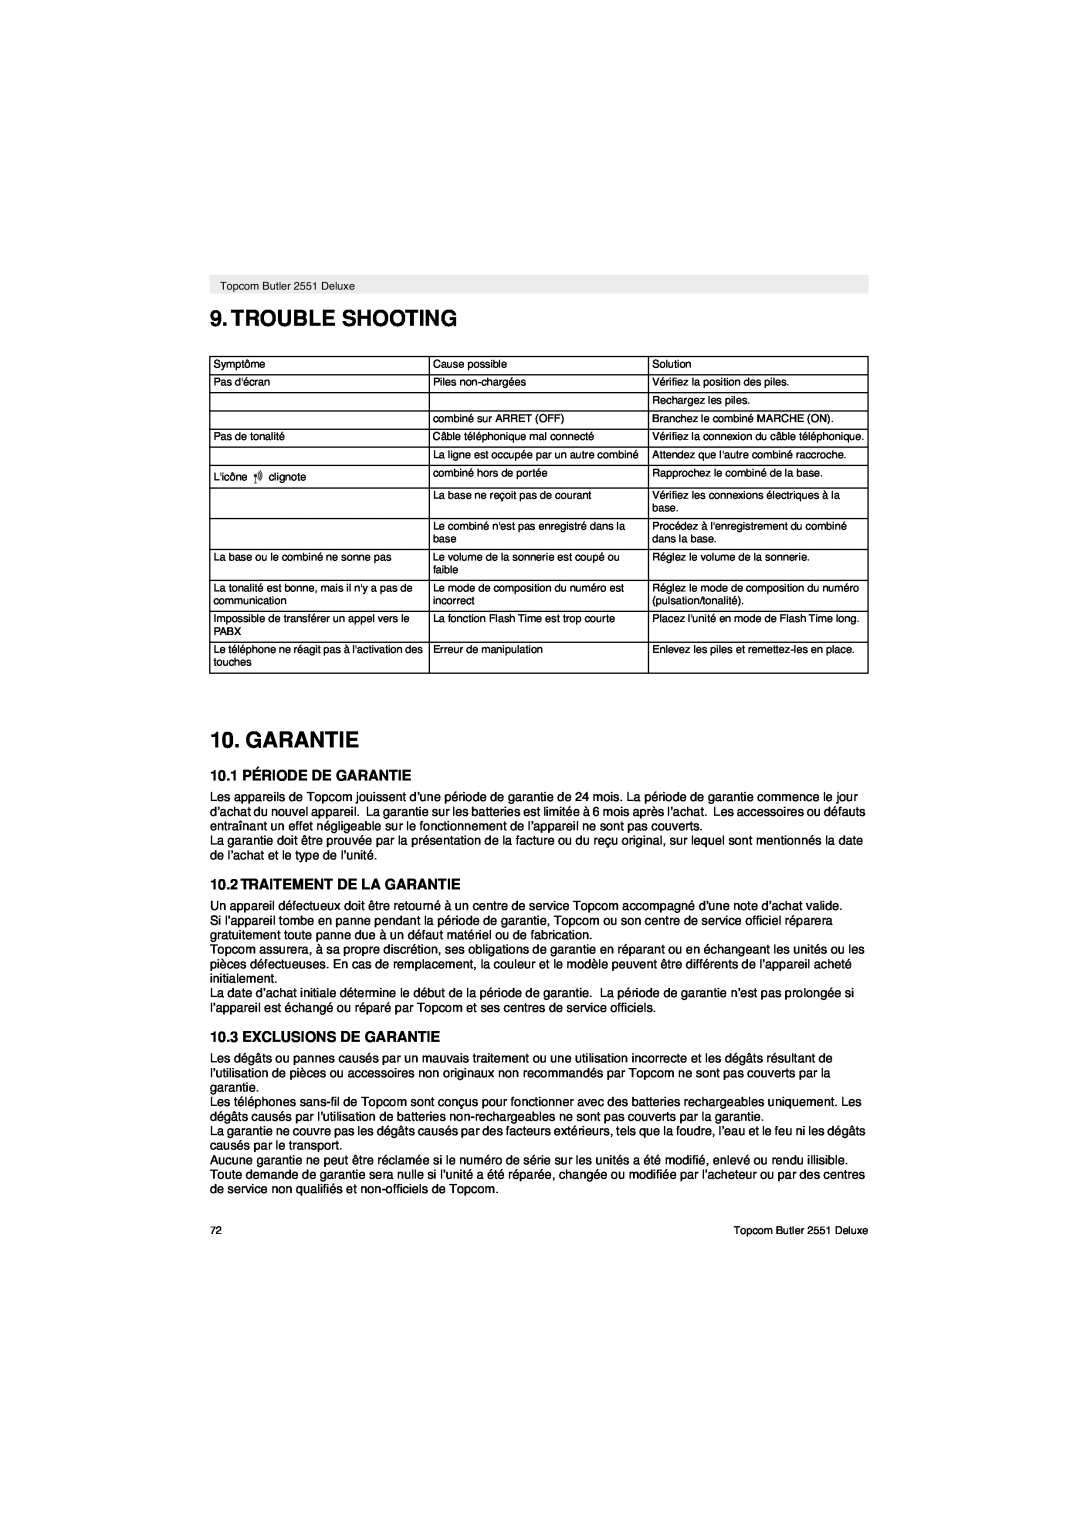 Topcom 2551 manual 10.1 PÉRIODE DE GARANTIE, Traitement De La Garantie, Exclusions De Garantie, Trouble Shooting 